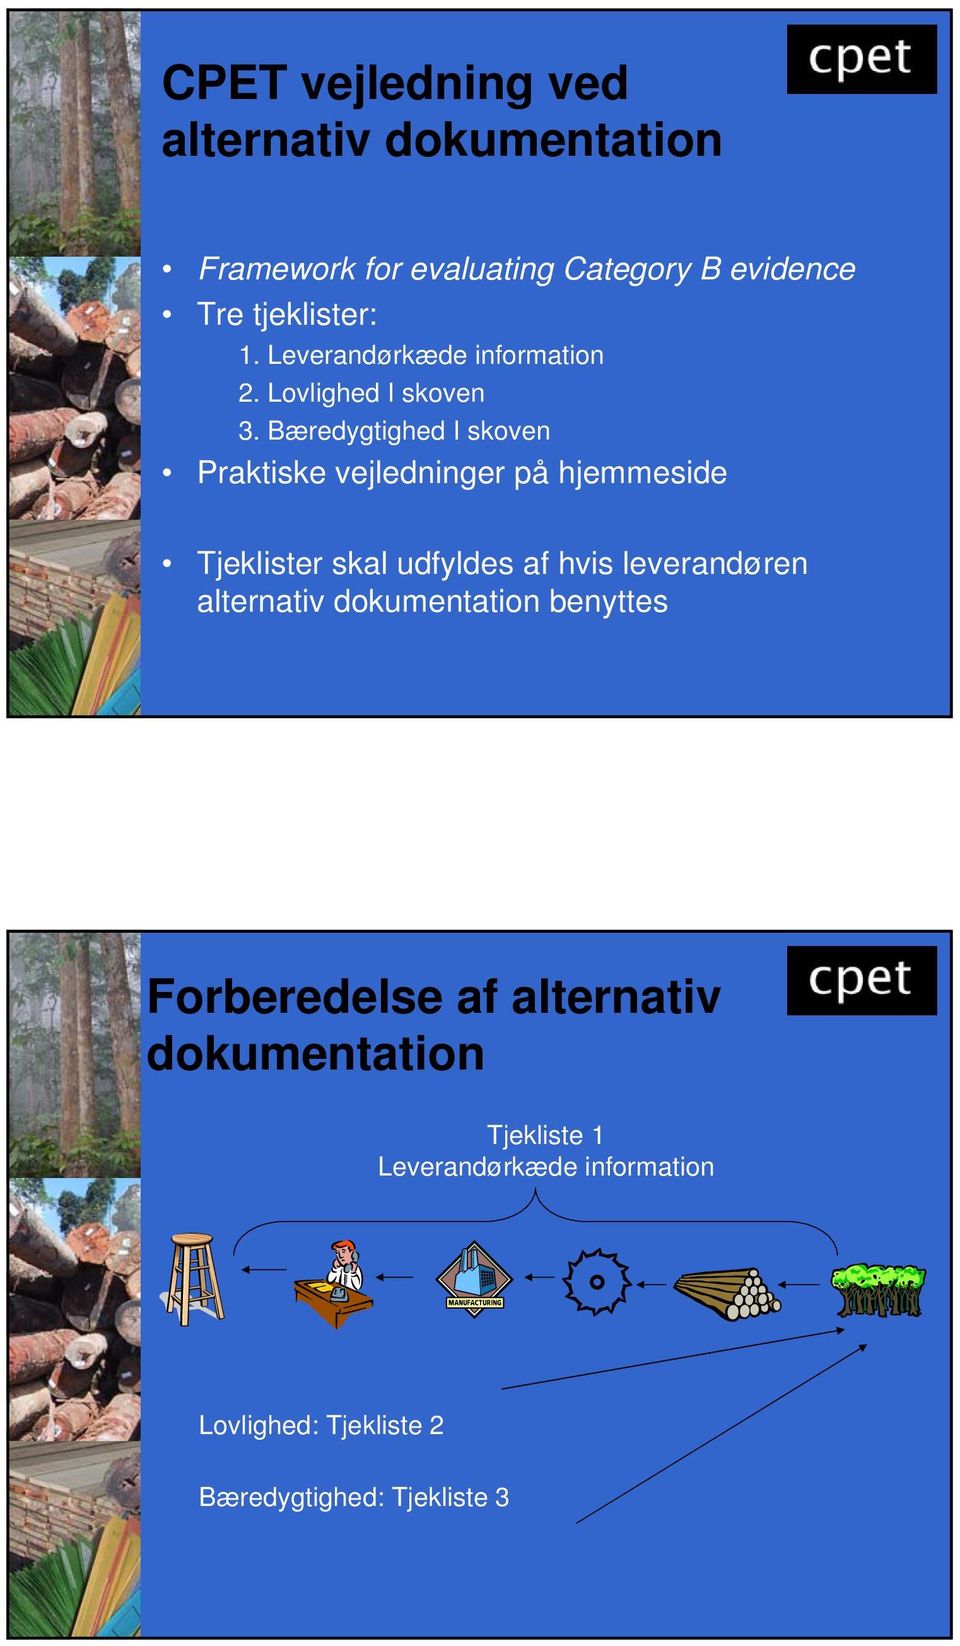 Bæredygtighed I skoven Praktiske vejledninger på hjemmeside Tjeklister skal udfyldes af hvis leverandøren